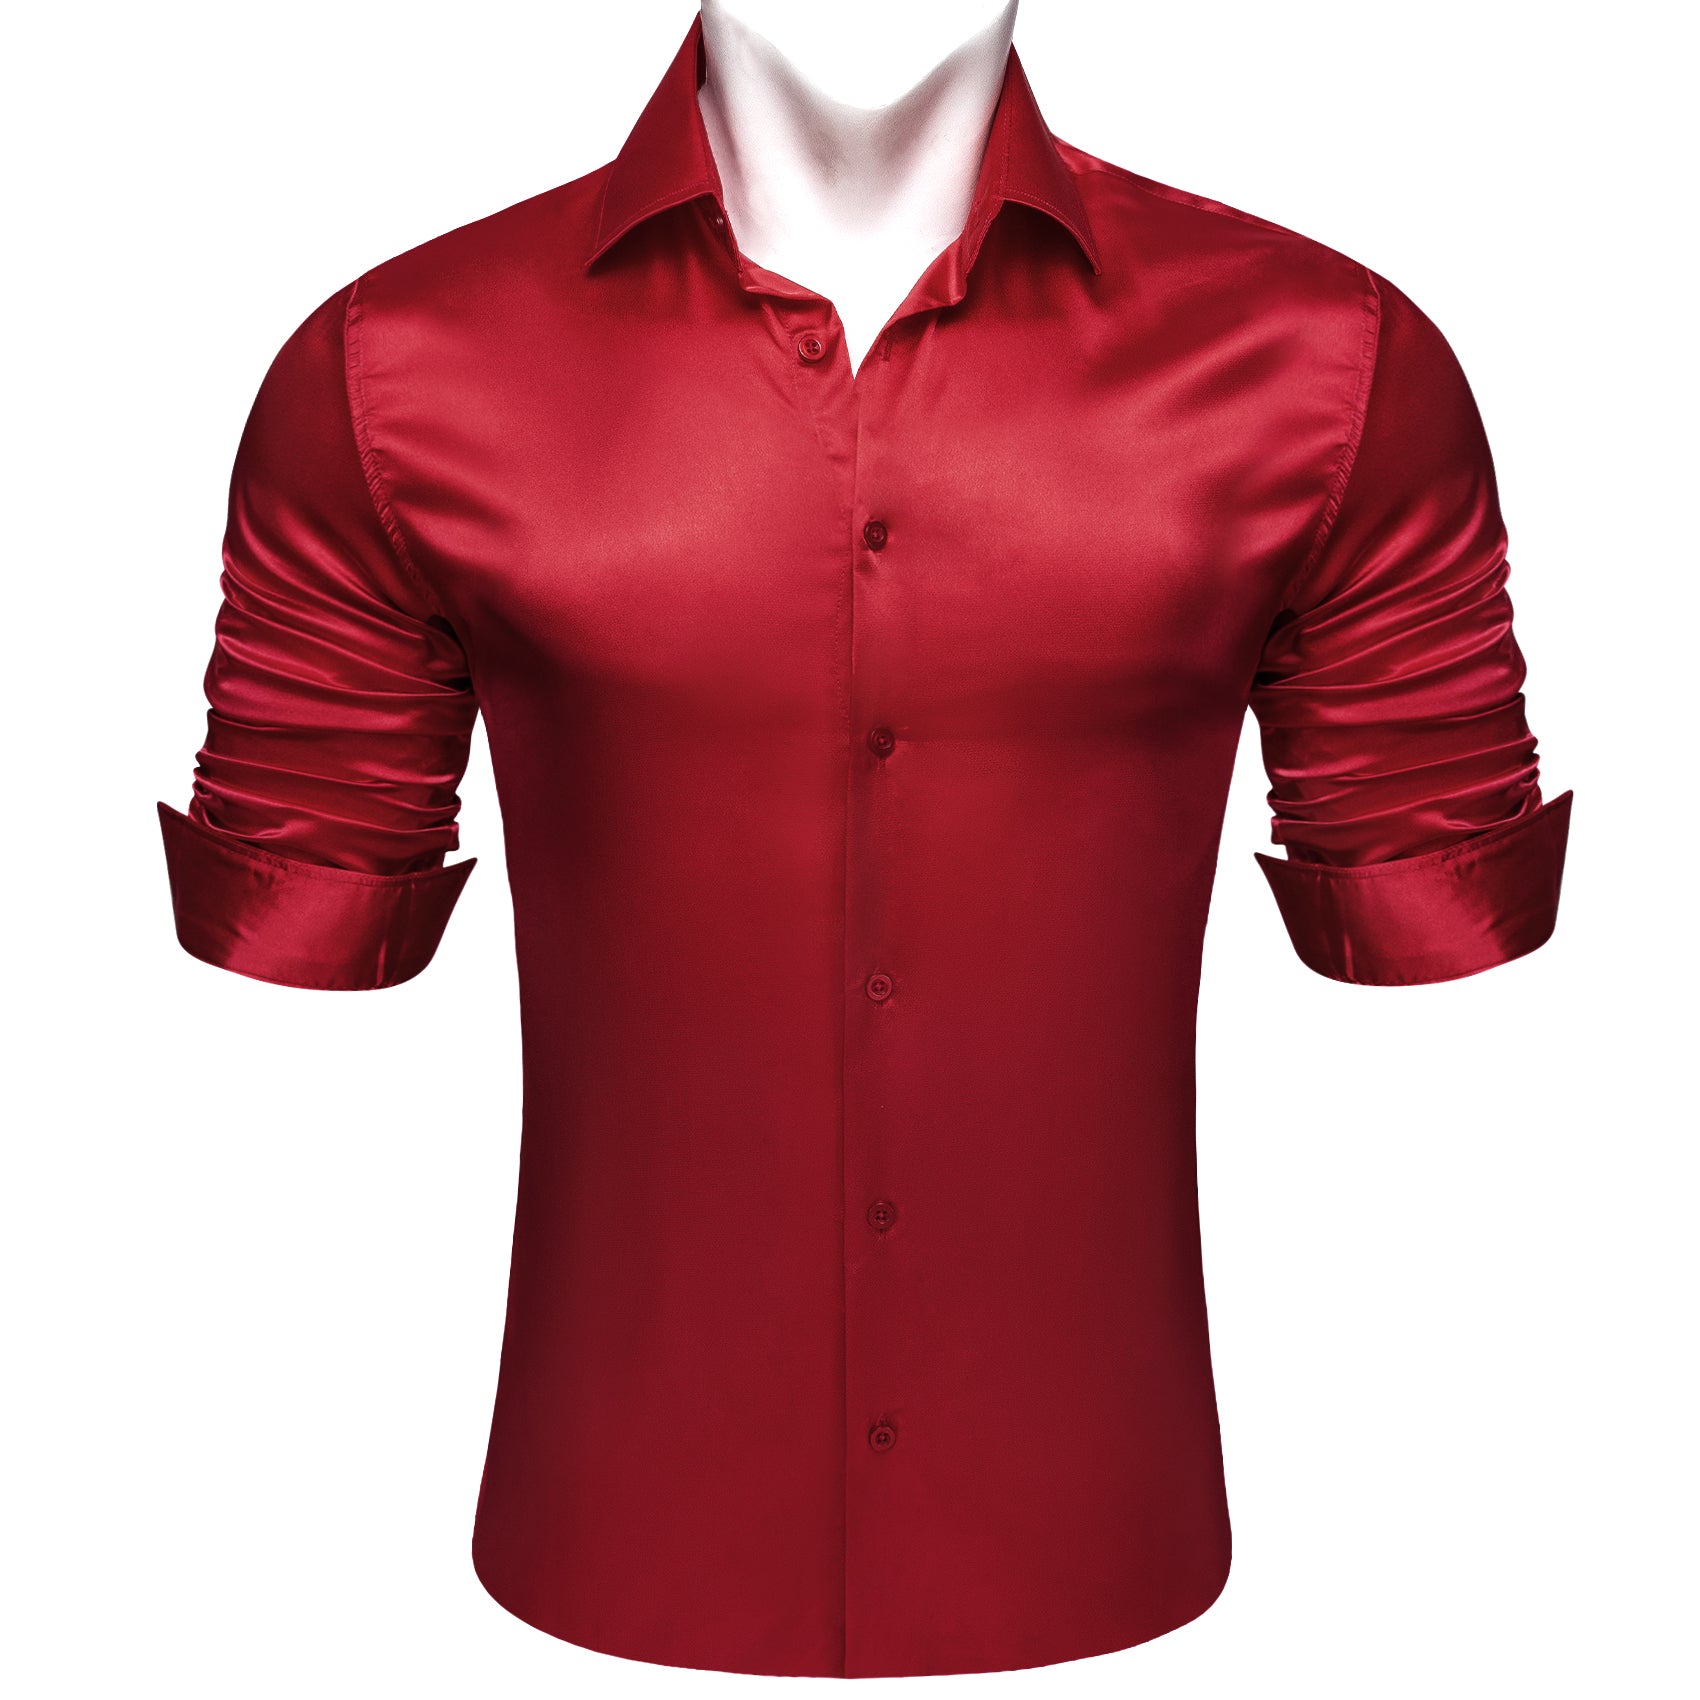 Barry.wang Dark Red Solid Silk Men's Long Sleeve Shirt